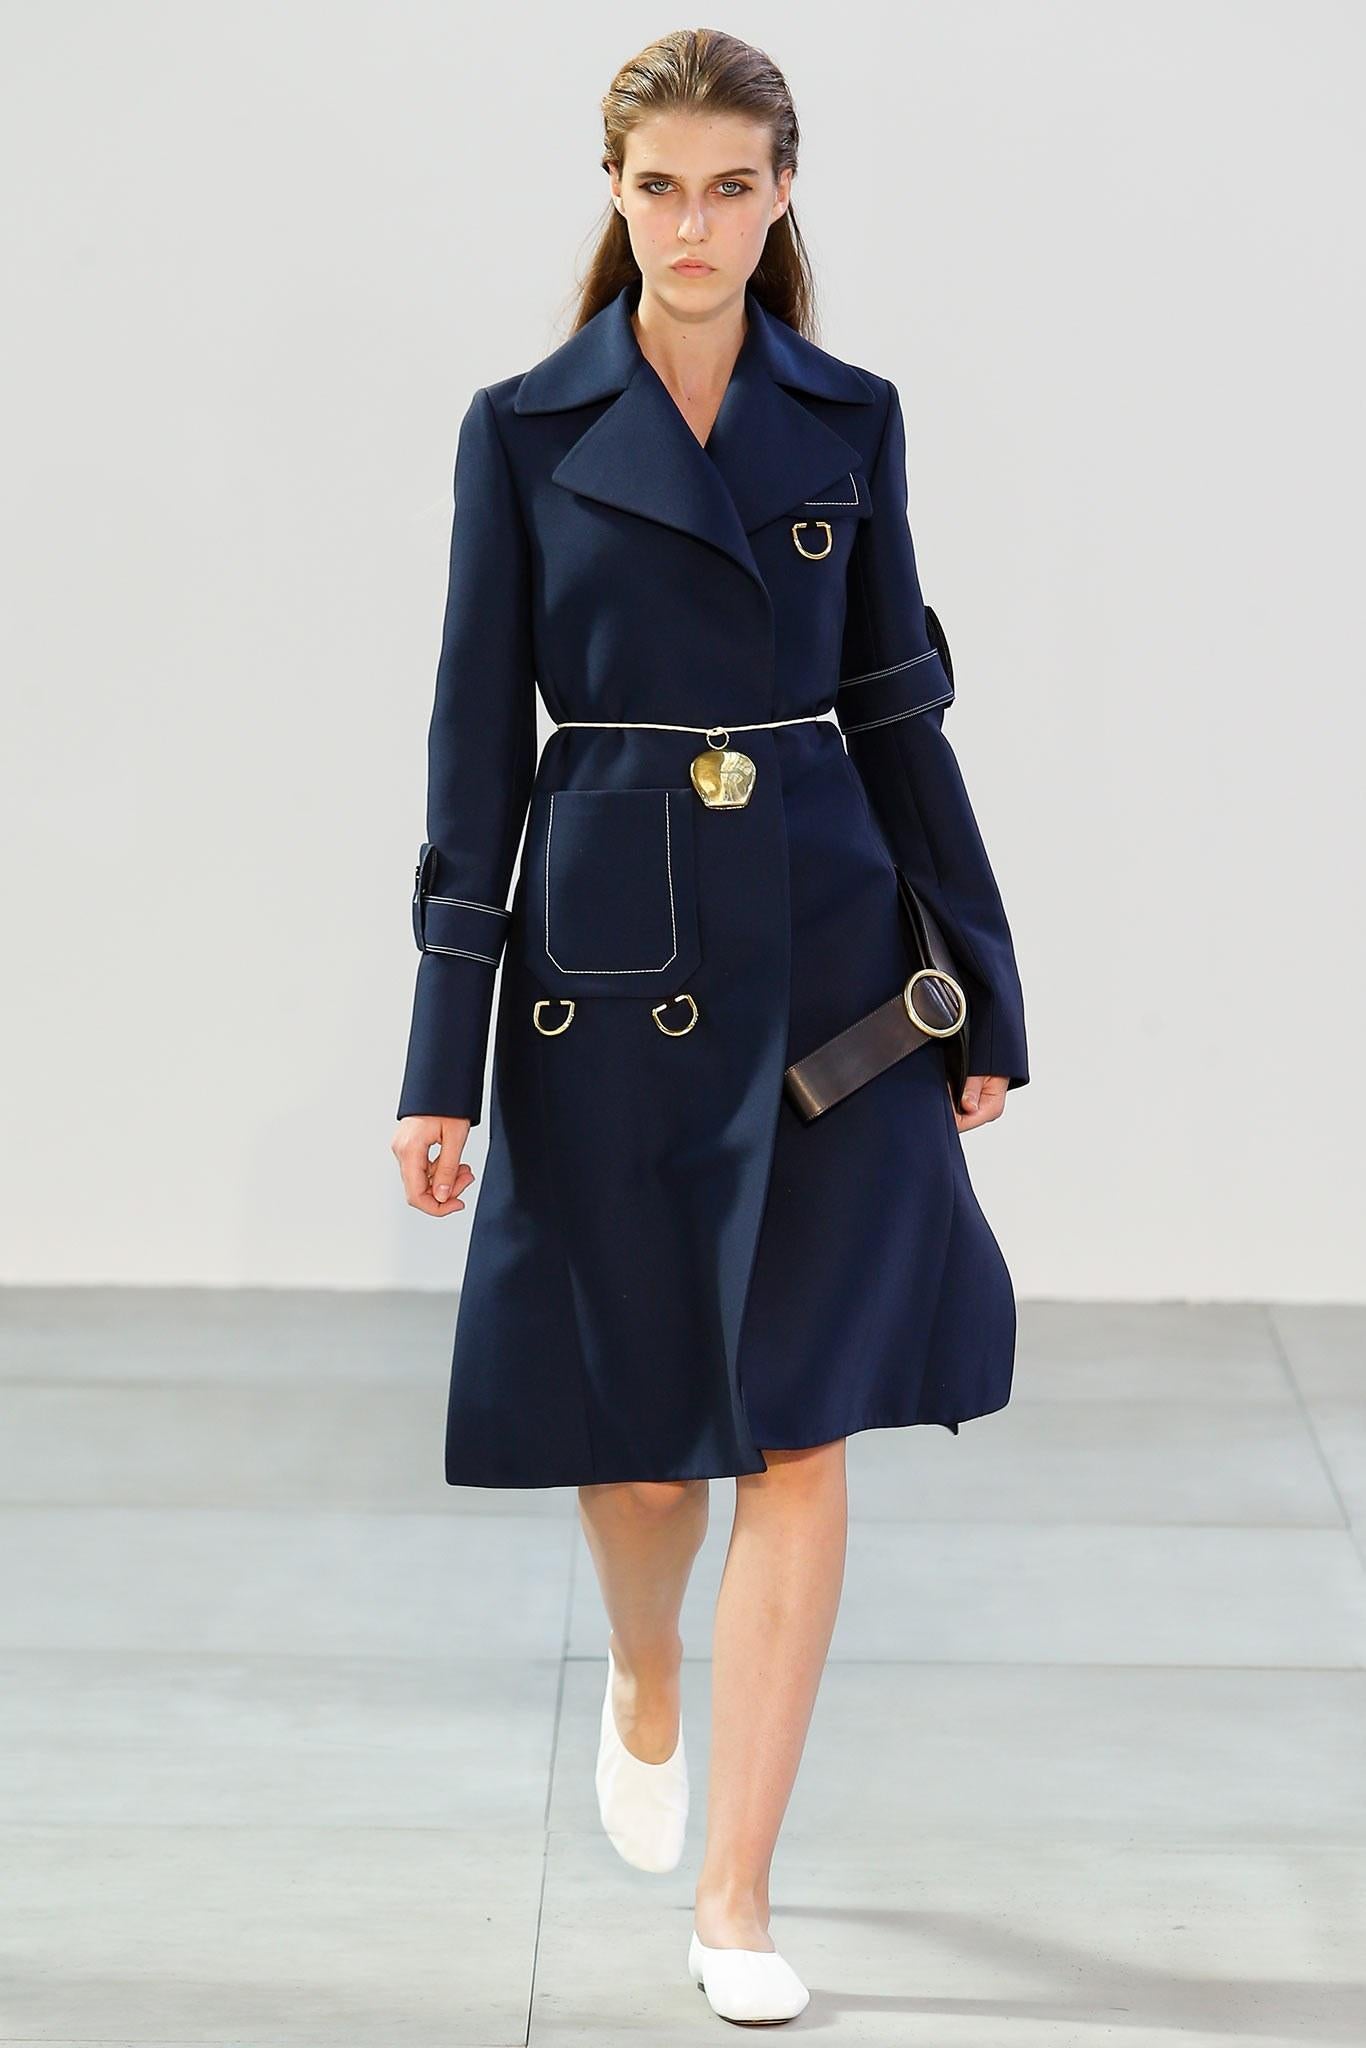 Women's or Men's 2015 CELINE by PHOEBE PHILO navy blue runway coat - new